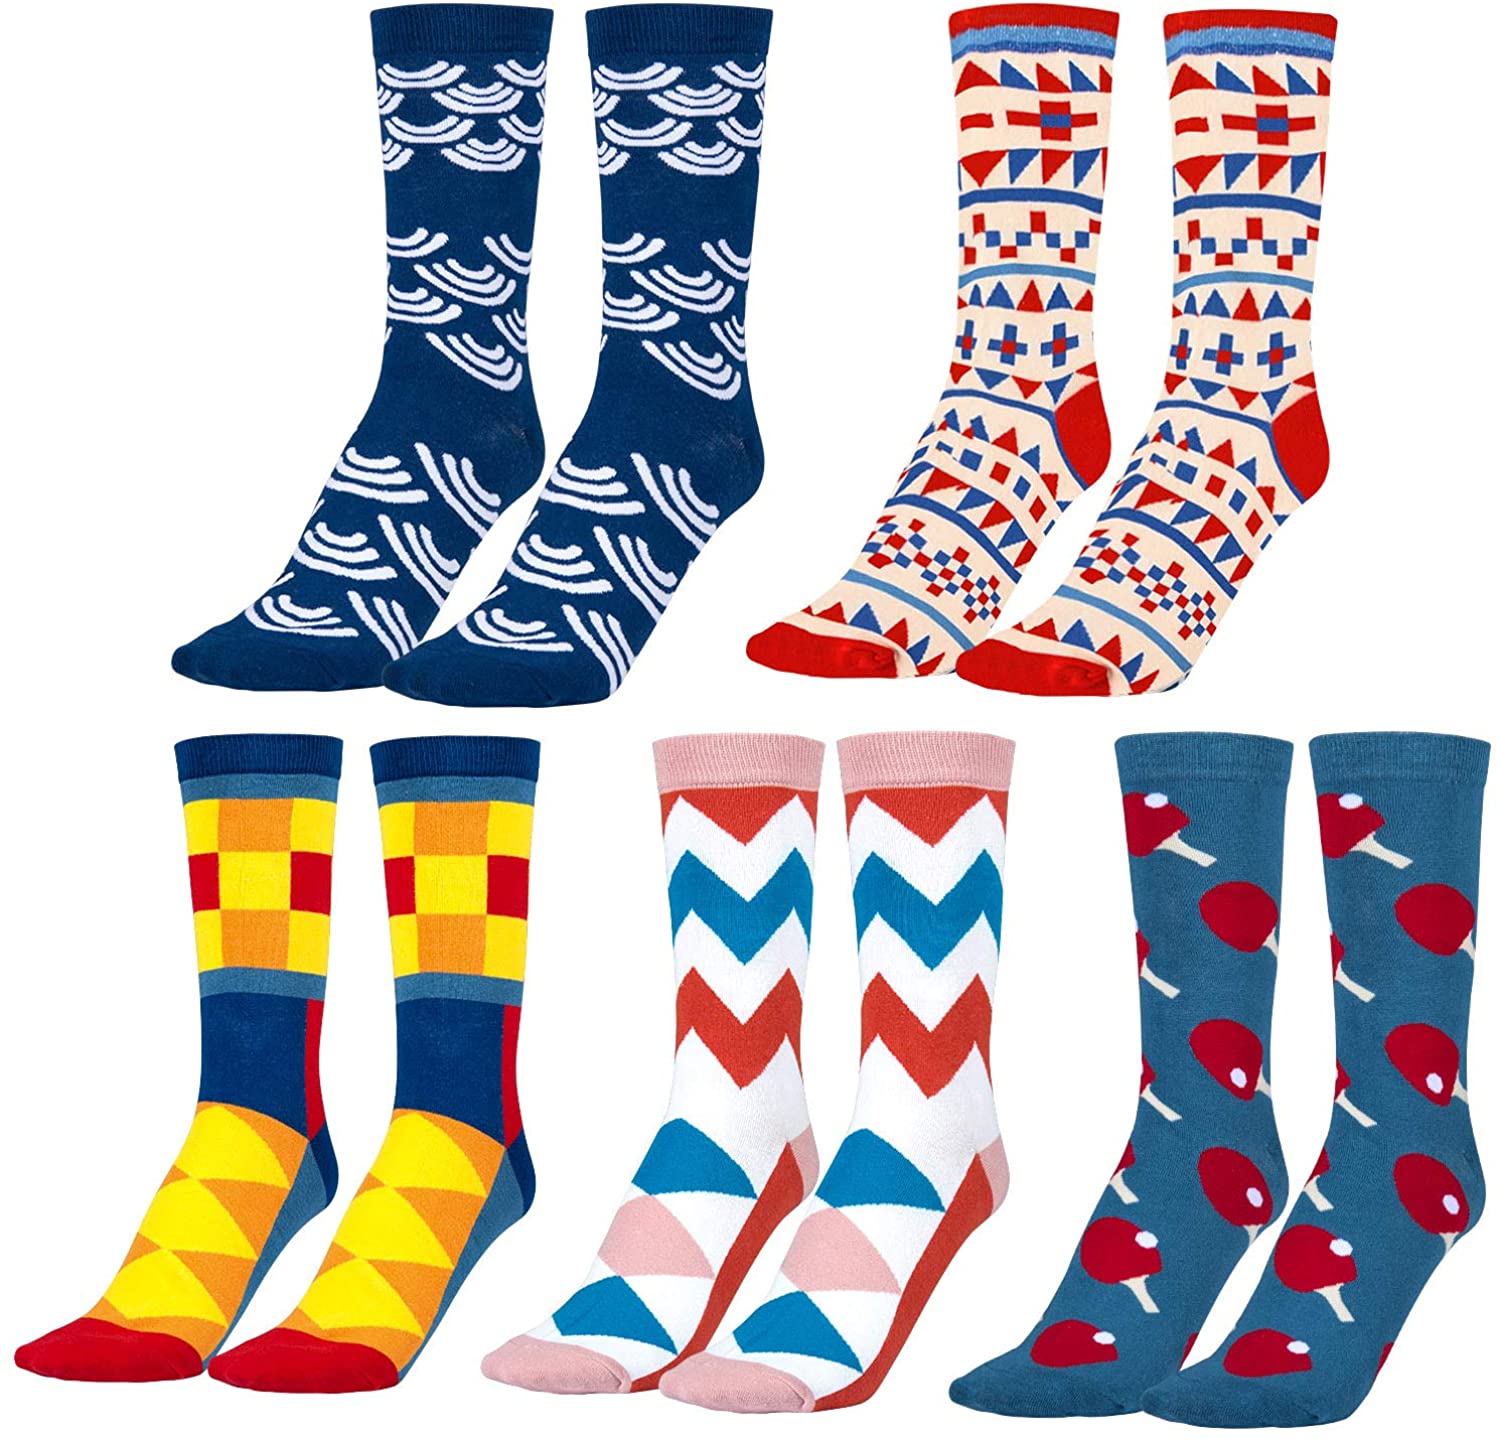 MOOKLIN ROAM 5 Paar Socken aus Baumwolle Frauen Thermal Socken Erwachsene Unisex Socken - Angenehmer Komfort-Bund - für Damen und Herren, Mädchen und Jungen (Mehrfarbig)